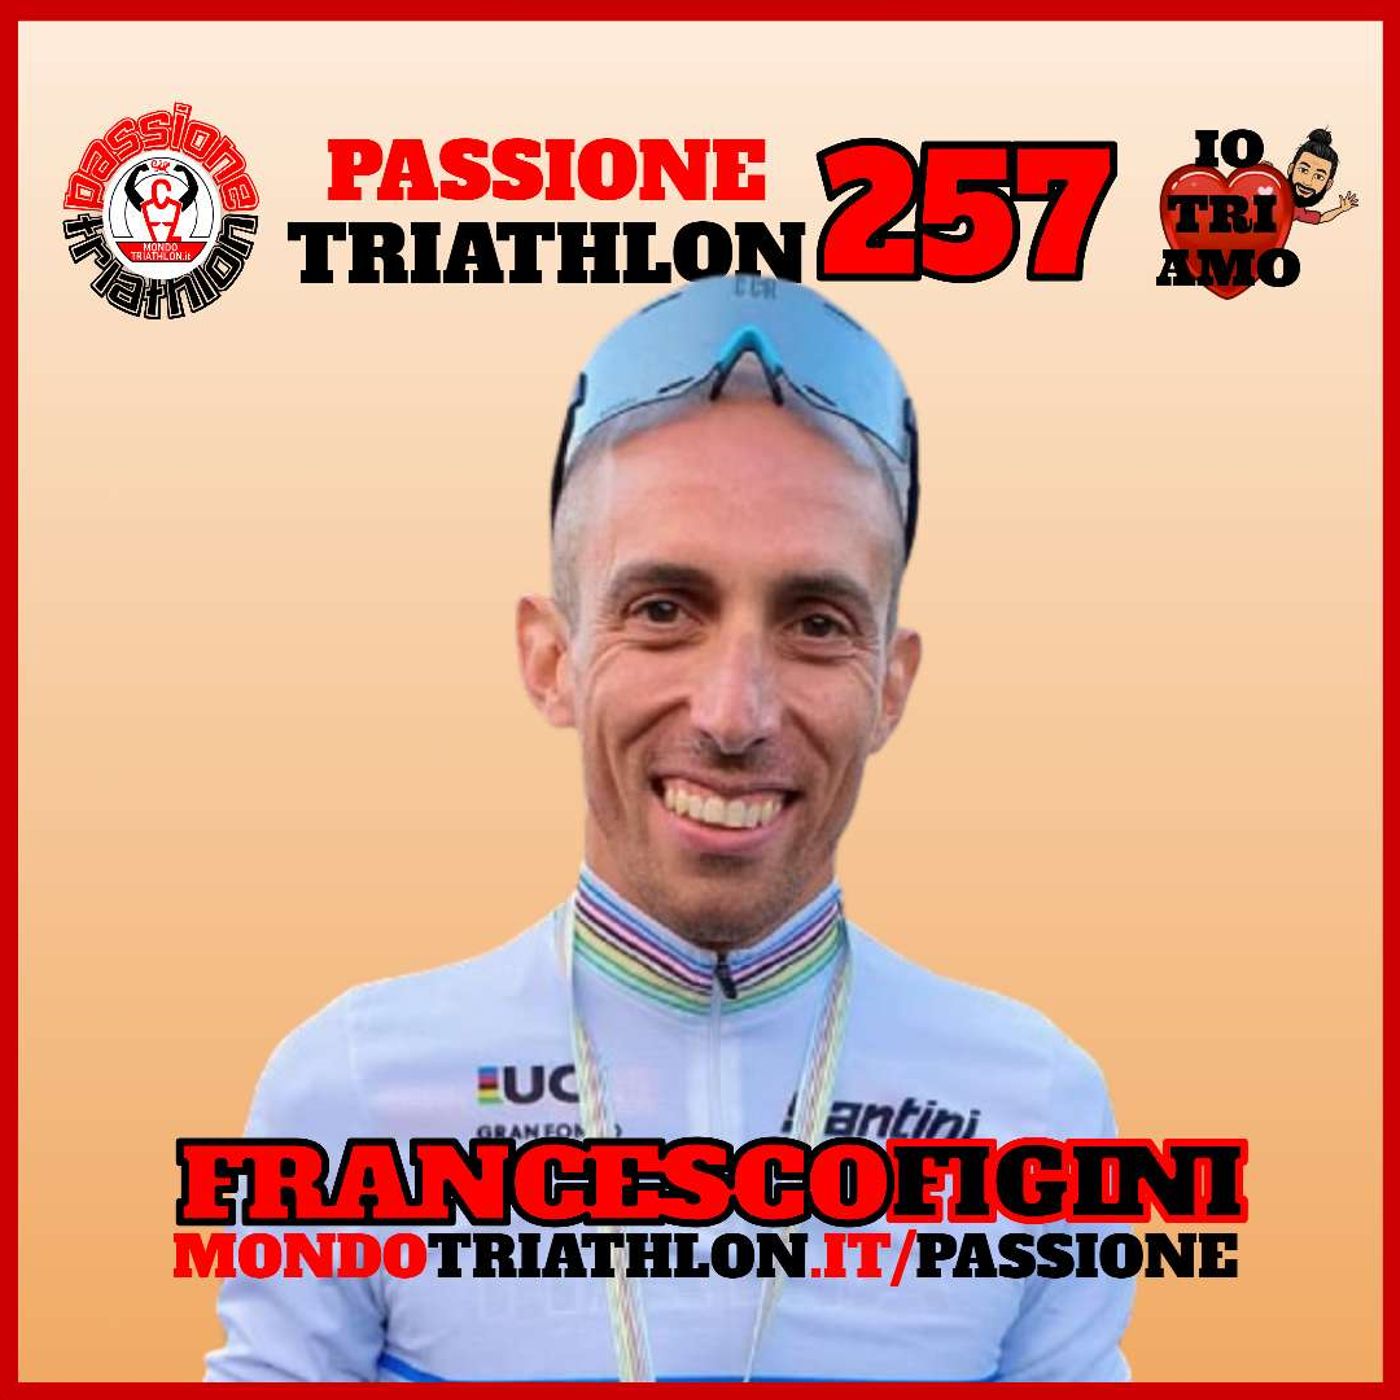 Passione Triathlon n° 257 🏊🚴🏃💗 Francesco Figini